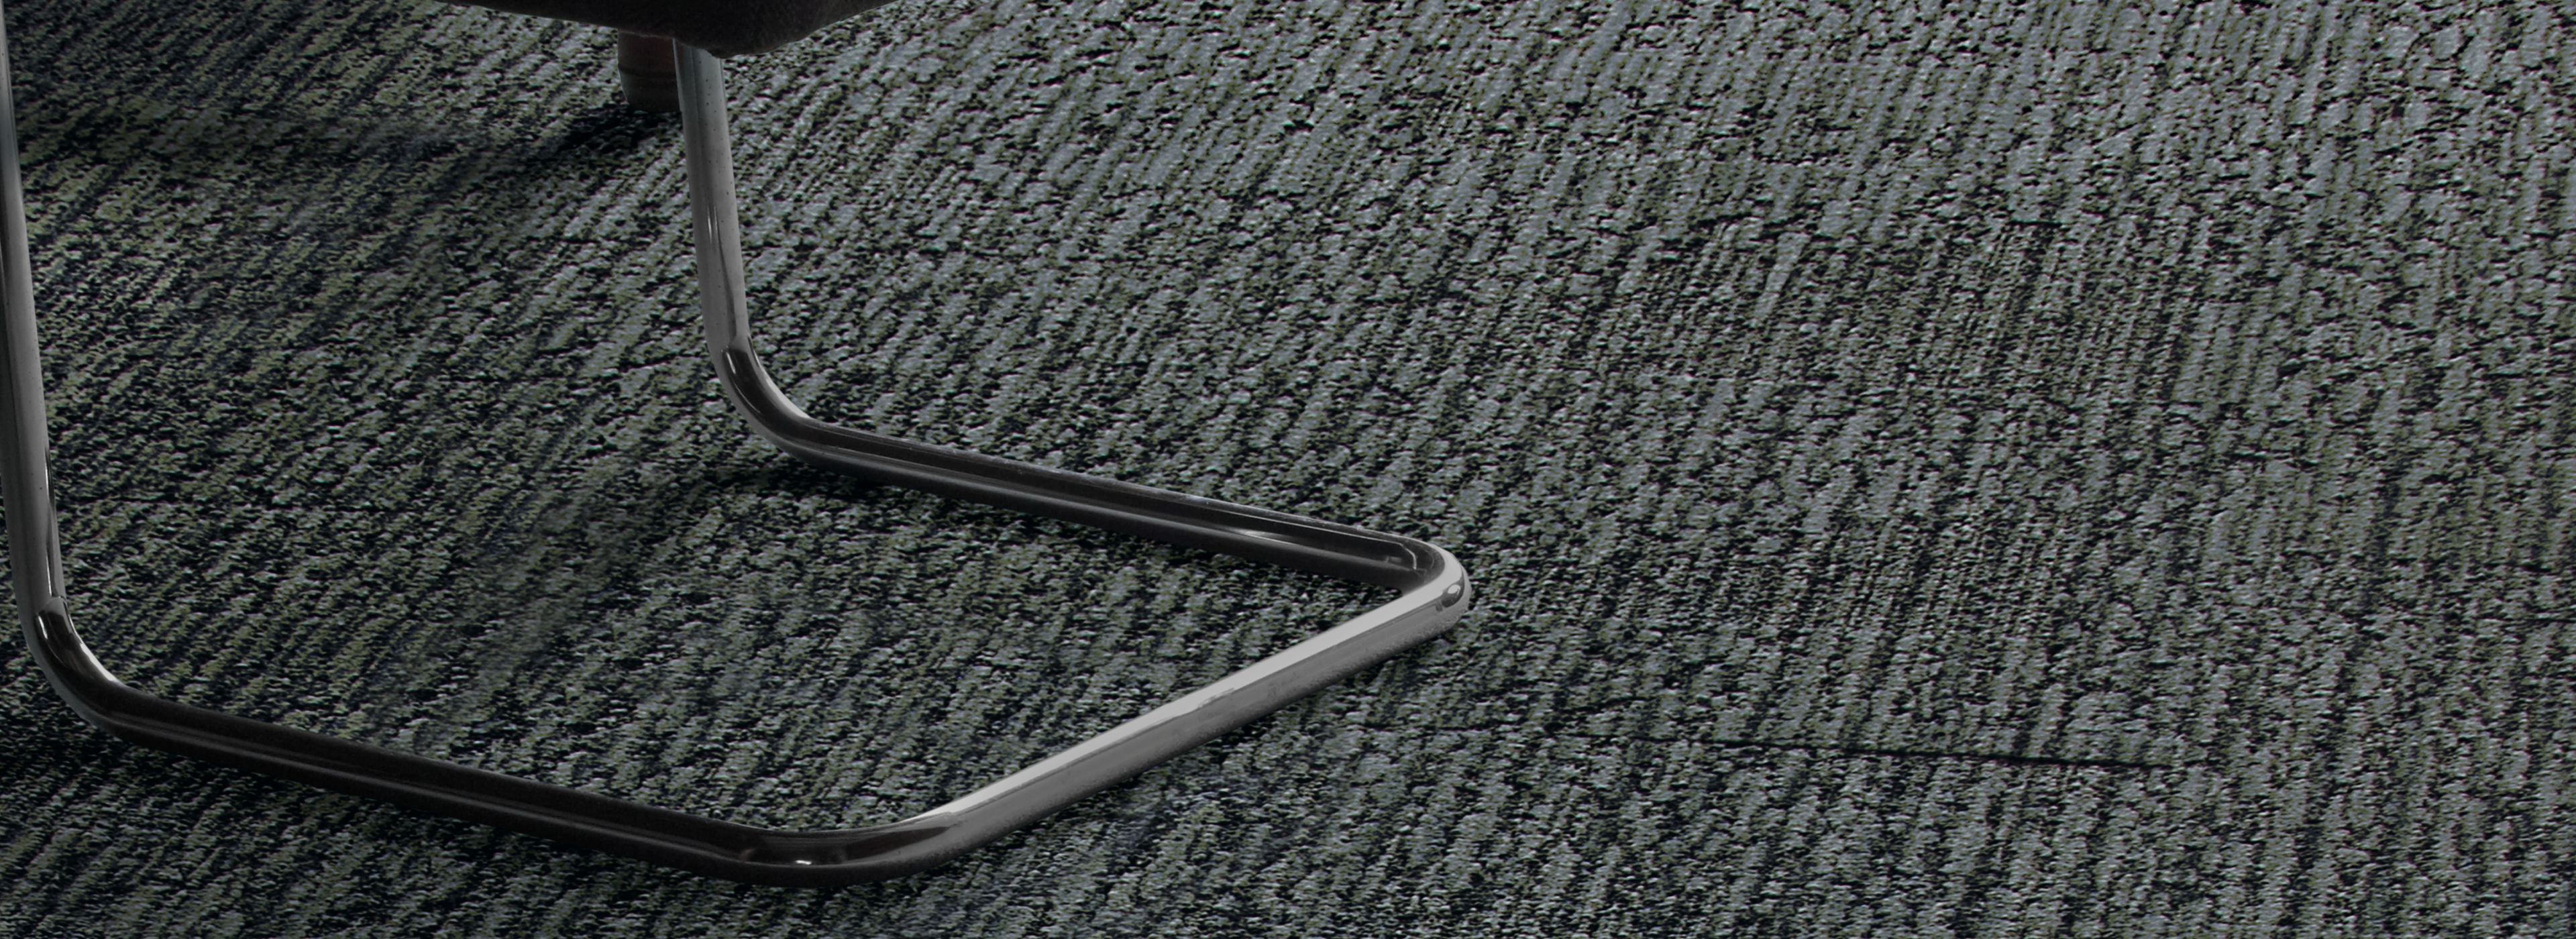 Interface UR201 carpet tile with desk and chair imagen número 1